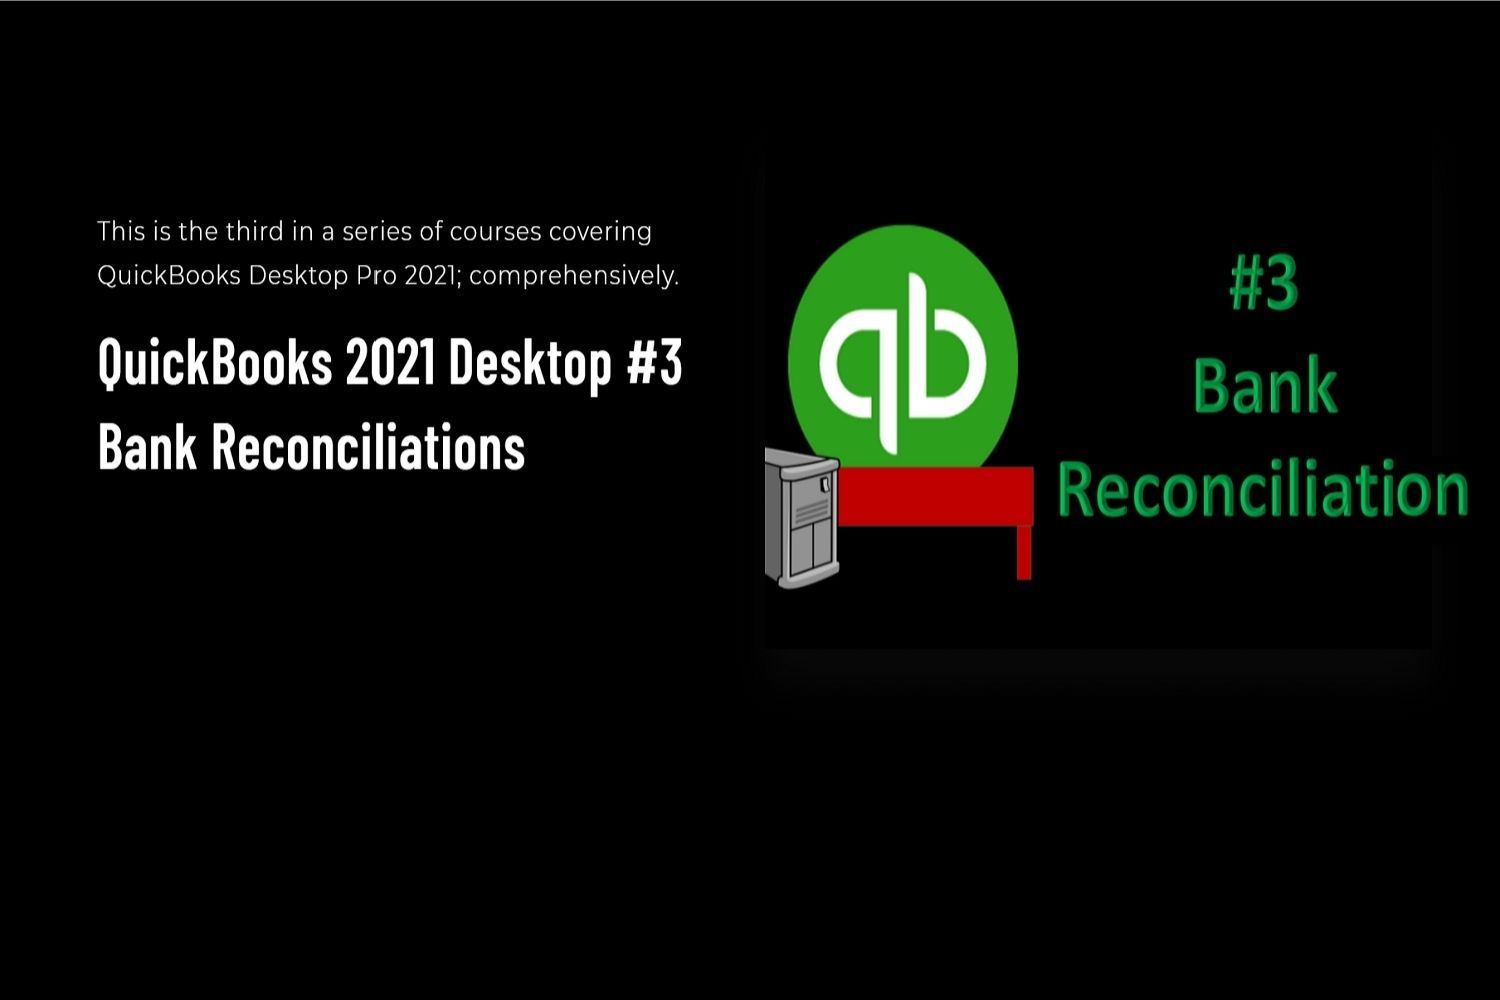 quickbooks desktop 2021